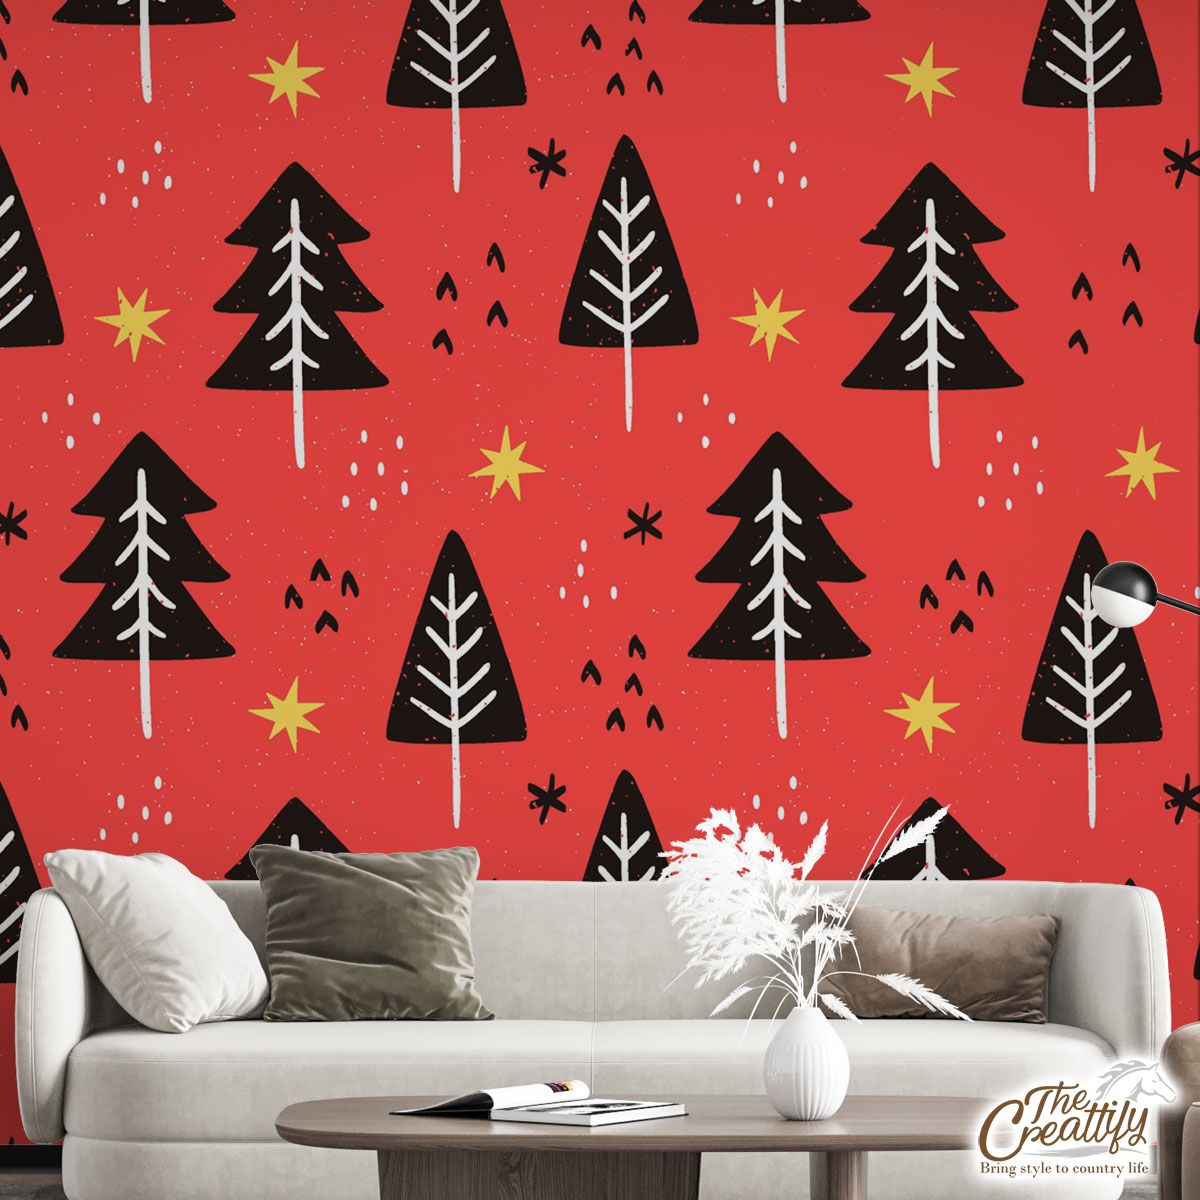 Pine Tree, Christmas Tree, Christmas Star, Snowflake Wall Mural